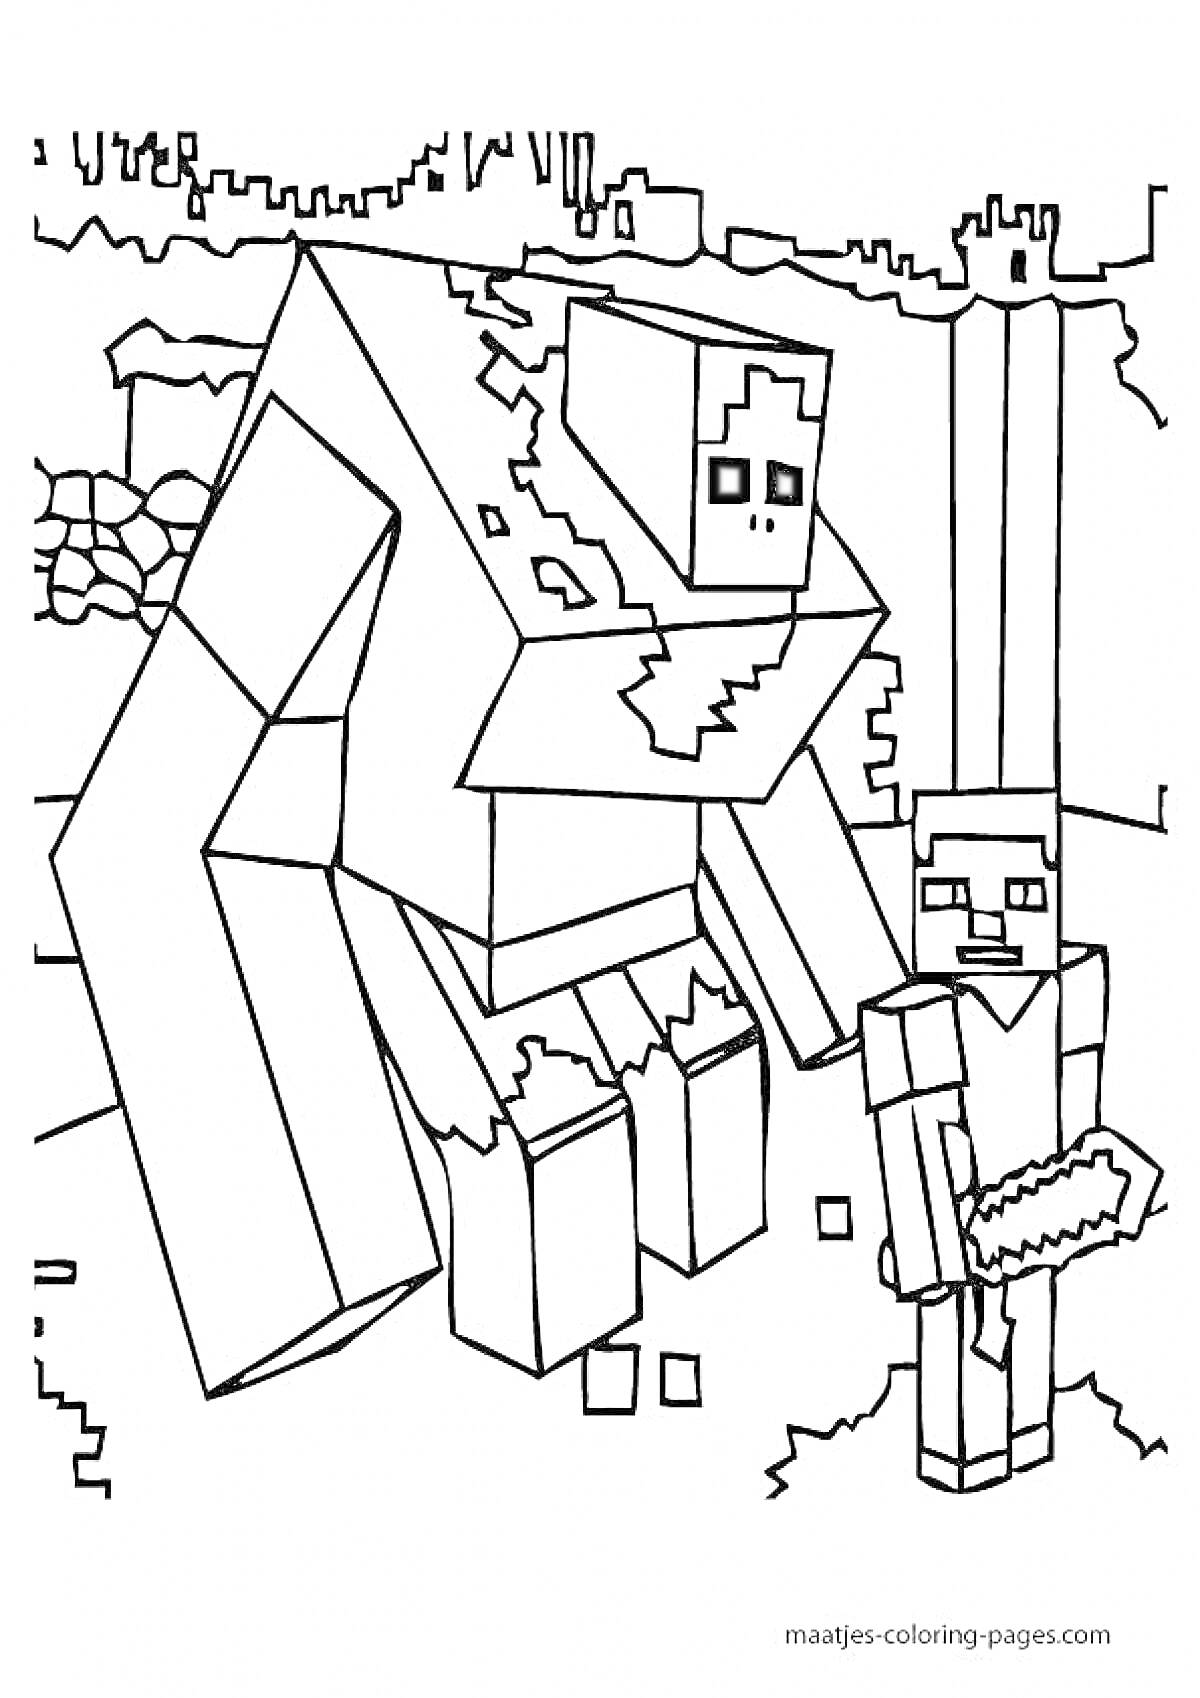 Раскраска Большой зомби и игрок с киркой на фоне разрушенных блоков